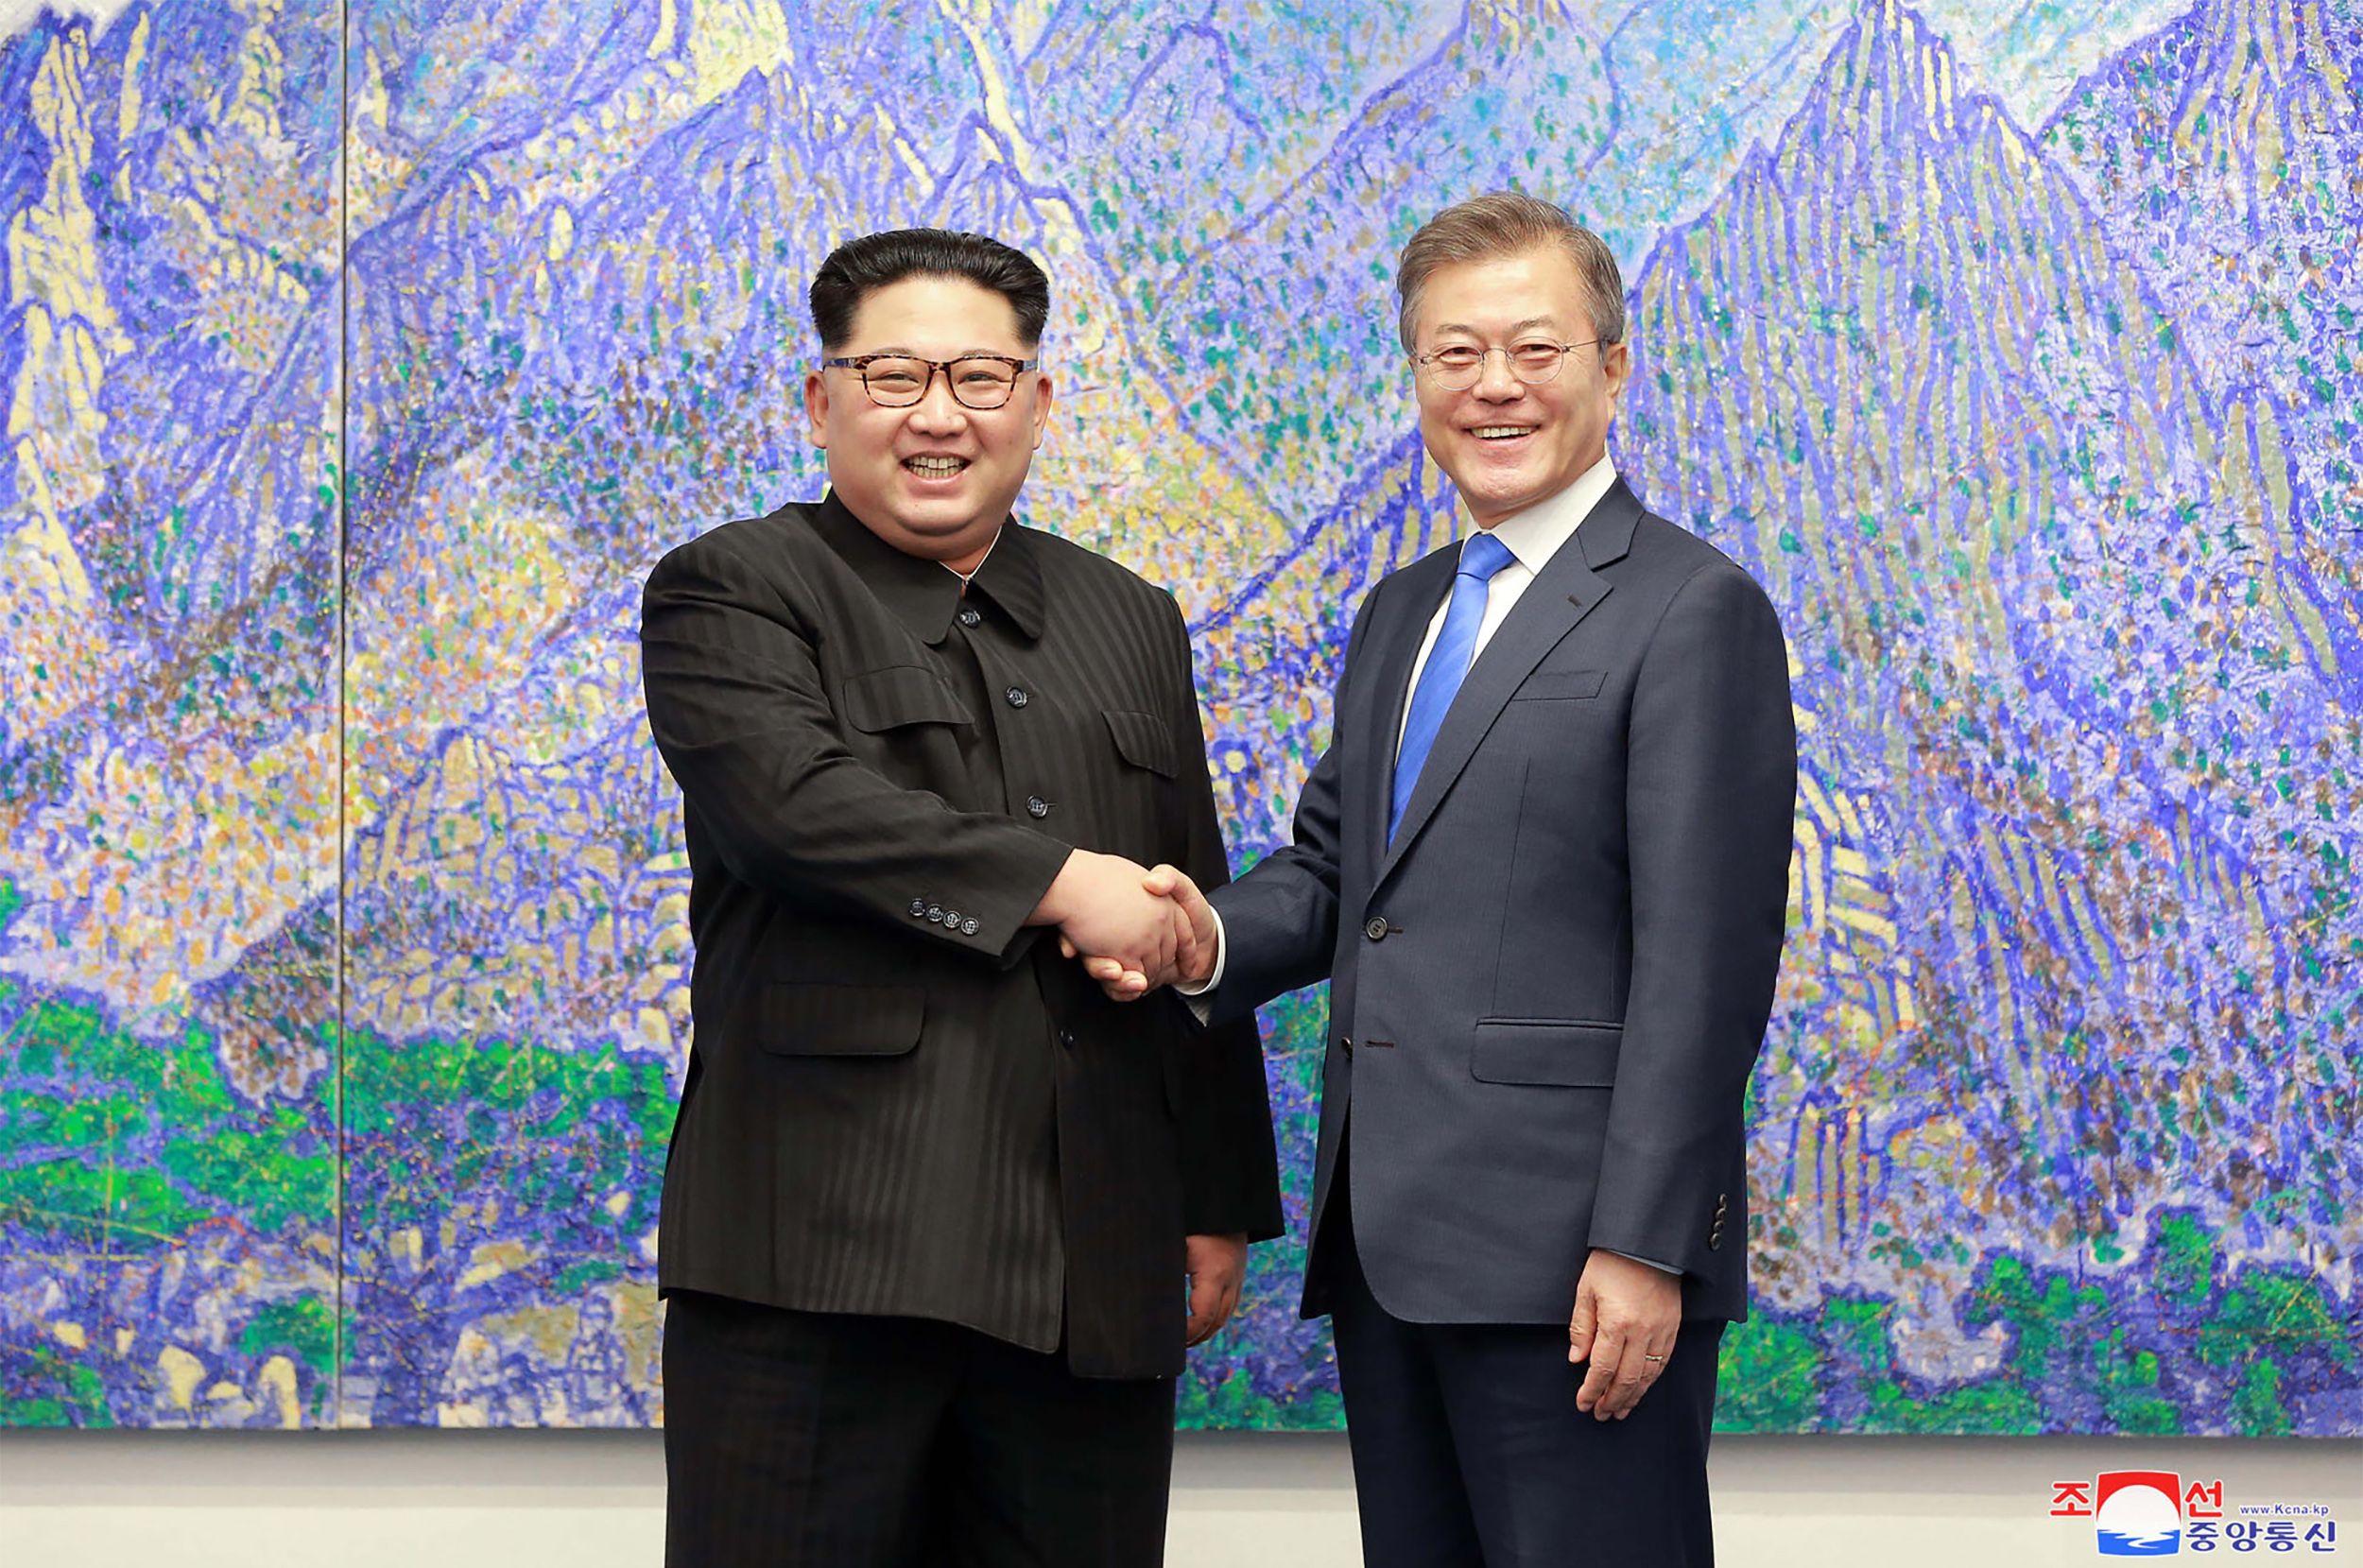 زعيمى كوريا الشمالية والجنوبية 